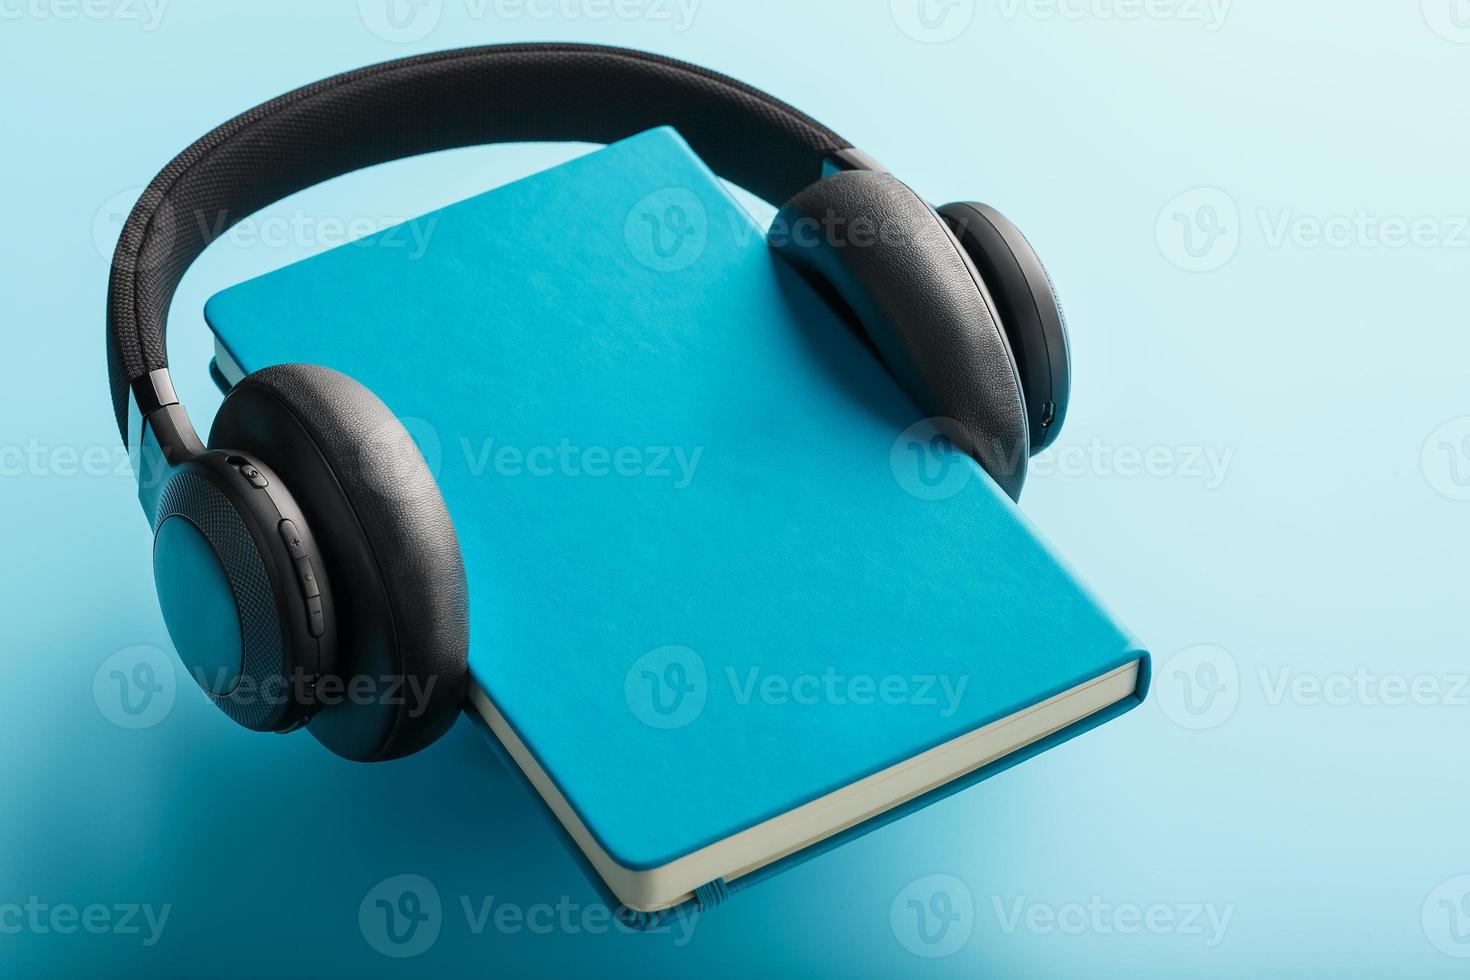 Kopfhörer werden auf einem Buch in einem blauen Hardcover auf blauem Hintergrund getragen, Ansicht von oben. foto